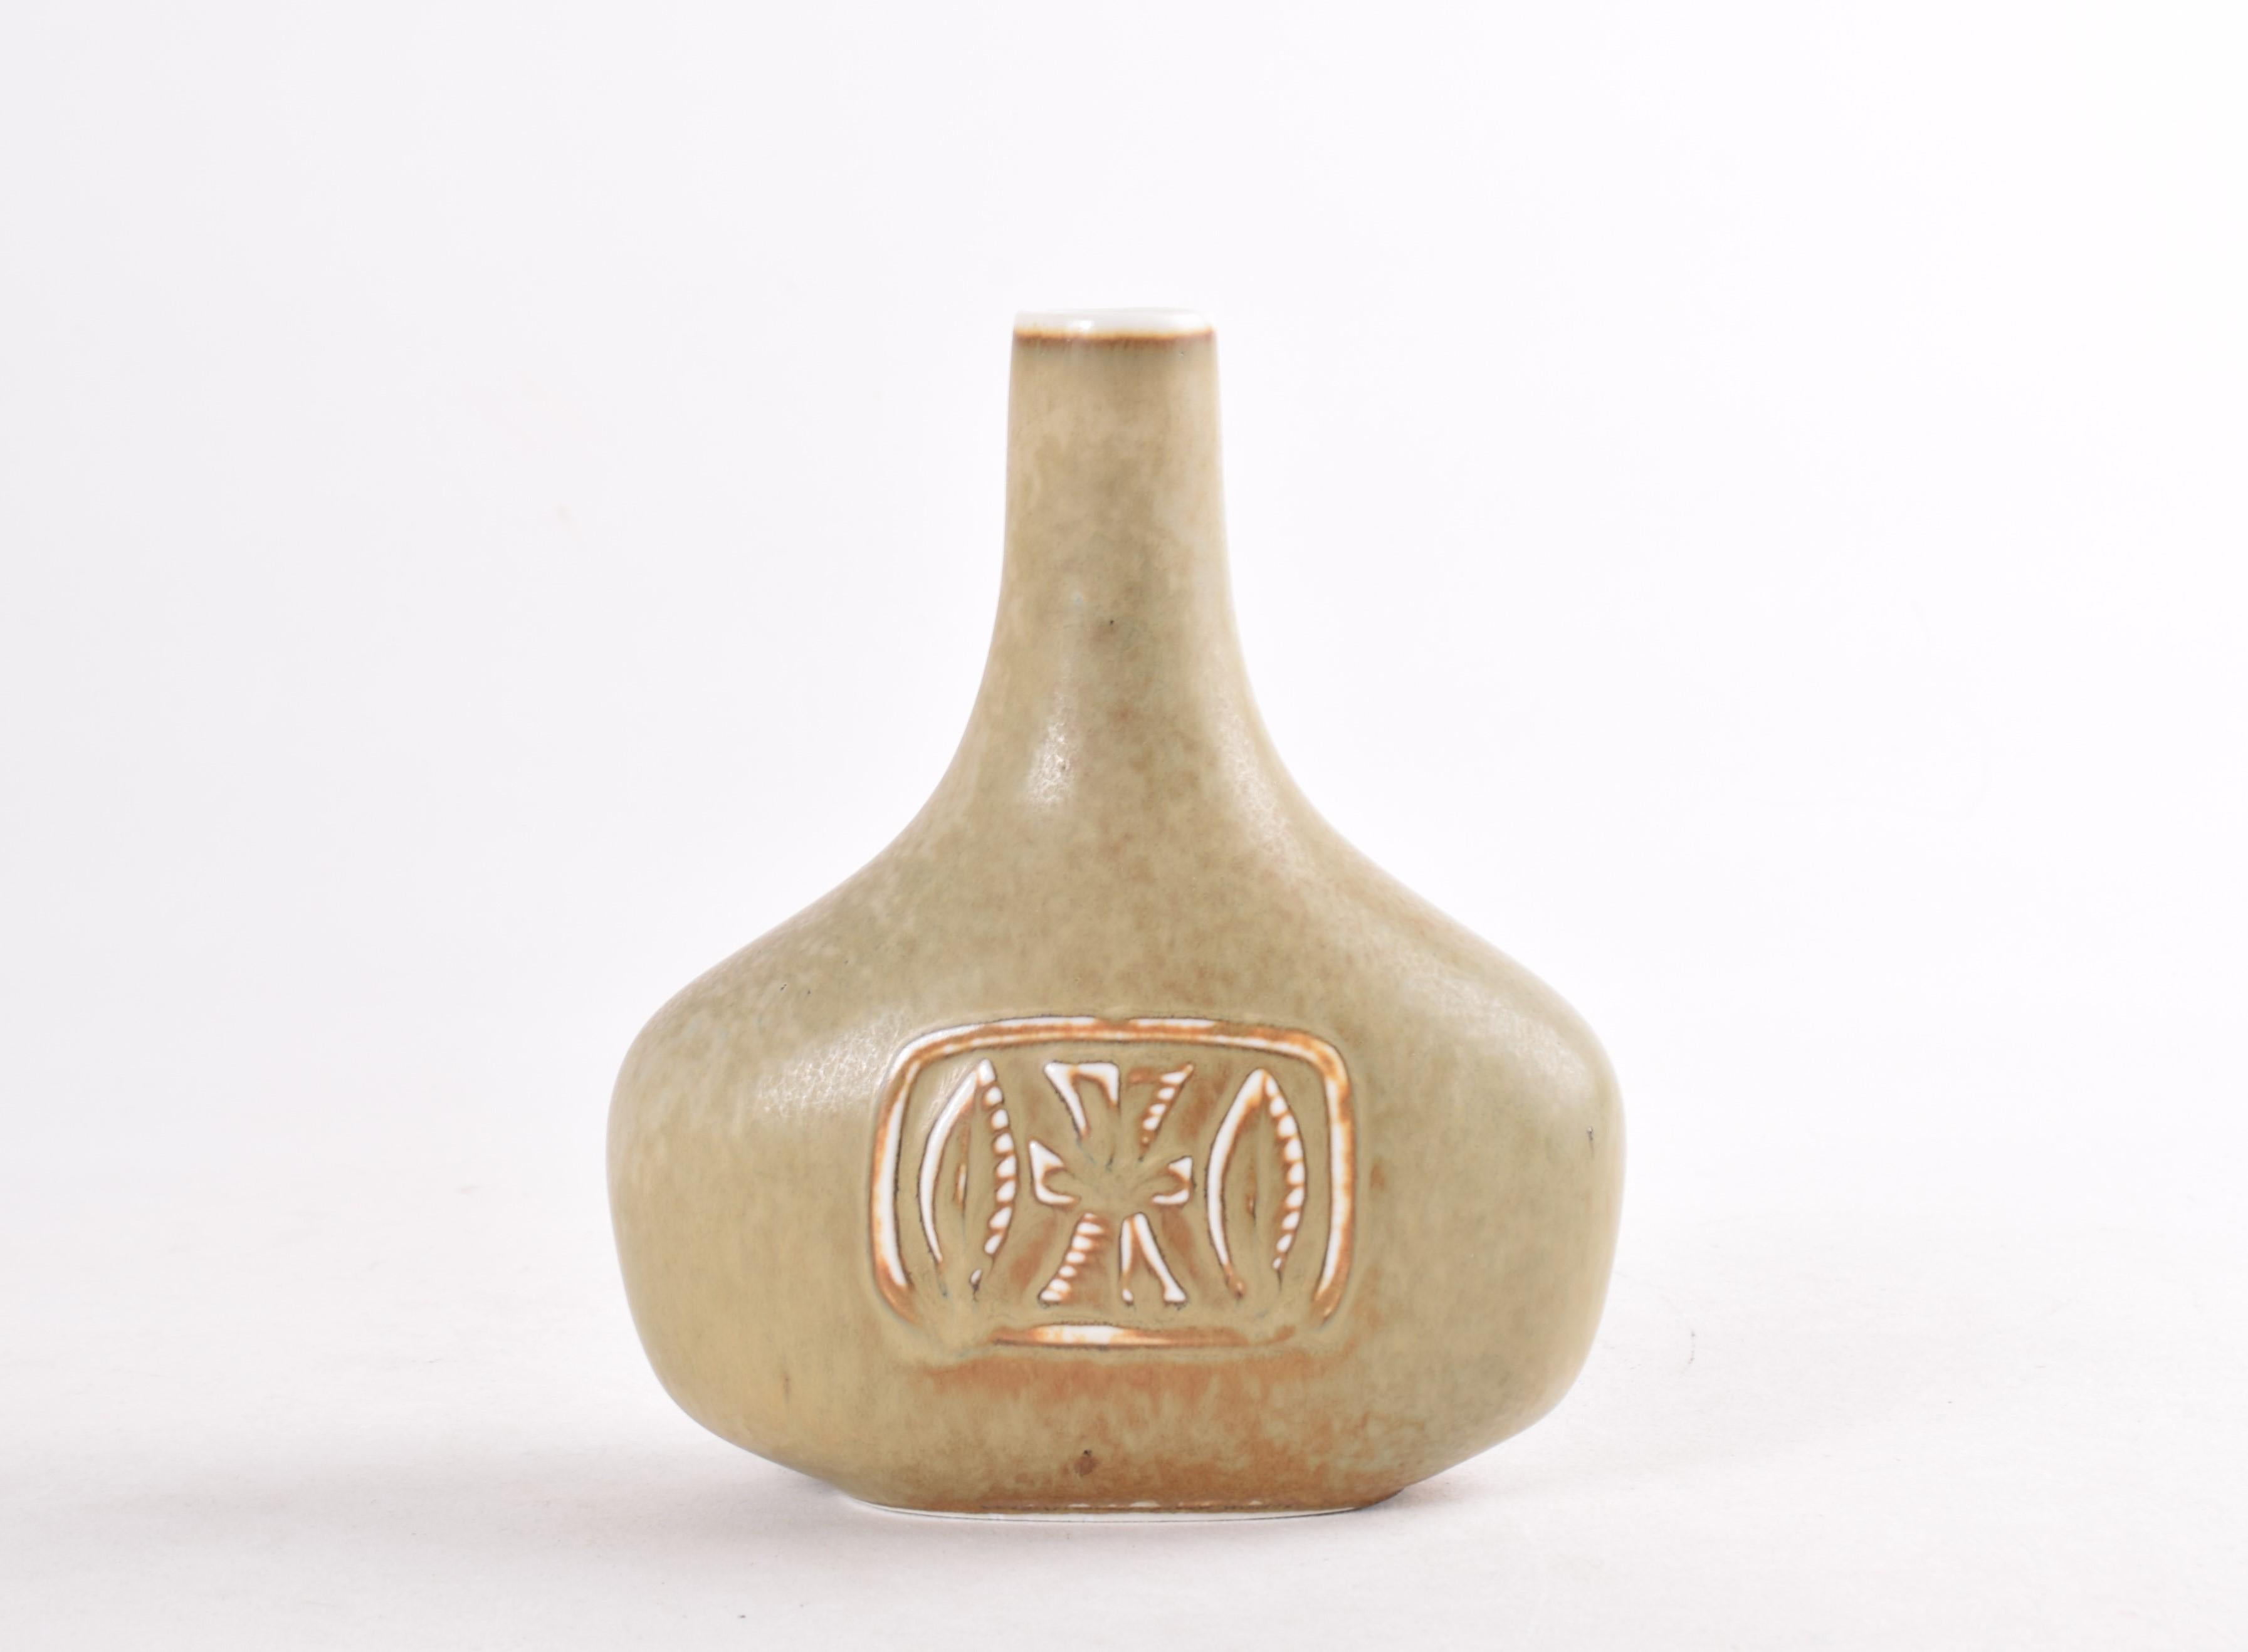 Vase scandinave du milieu du siècle par le designer suédois Gunnar Nylund (1904-97) pour Rörstrand, Suède. Fabriqué entre les années 1950 et 1960.

Le vase en forme de bouteille a une glaçure haresfur en beige vert olive clair avec un peu